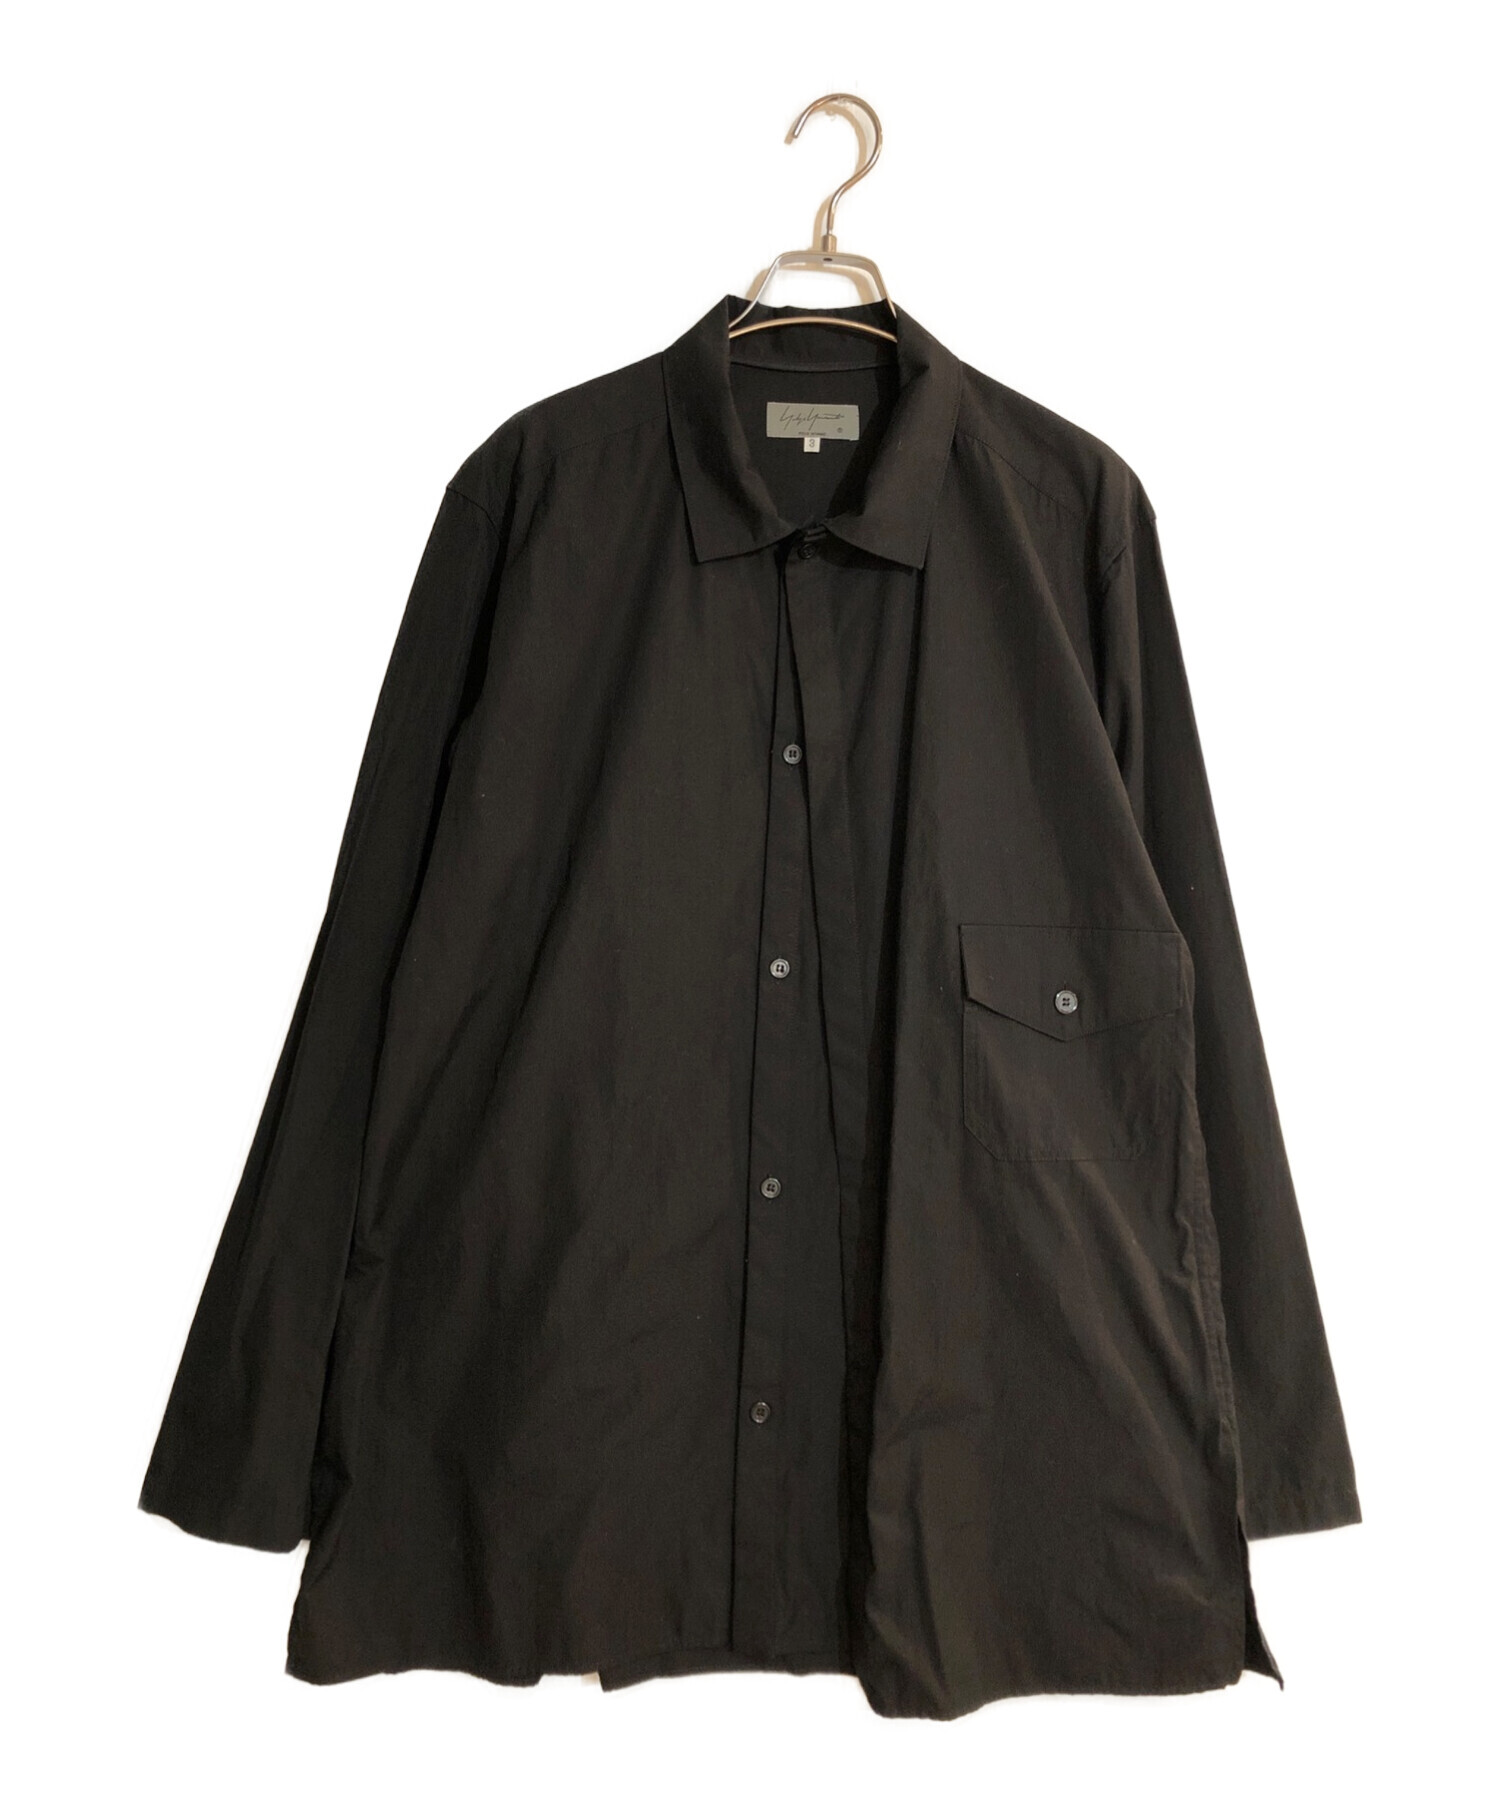 Yohji Yamamoto pour homme (ヨウジヤマモト プールオム) レイヤードコットンビッグシャツ ブラック サイズ:3